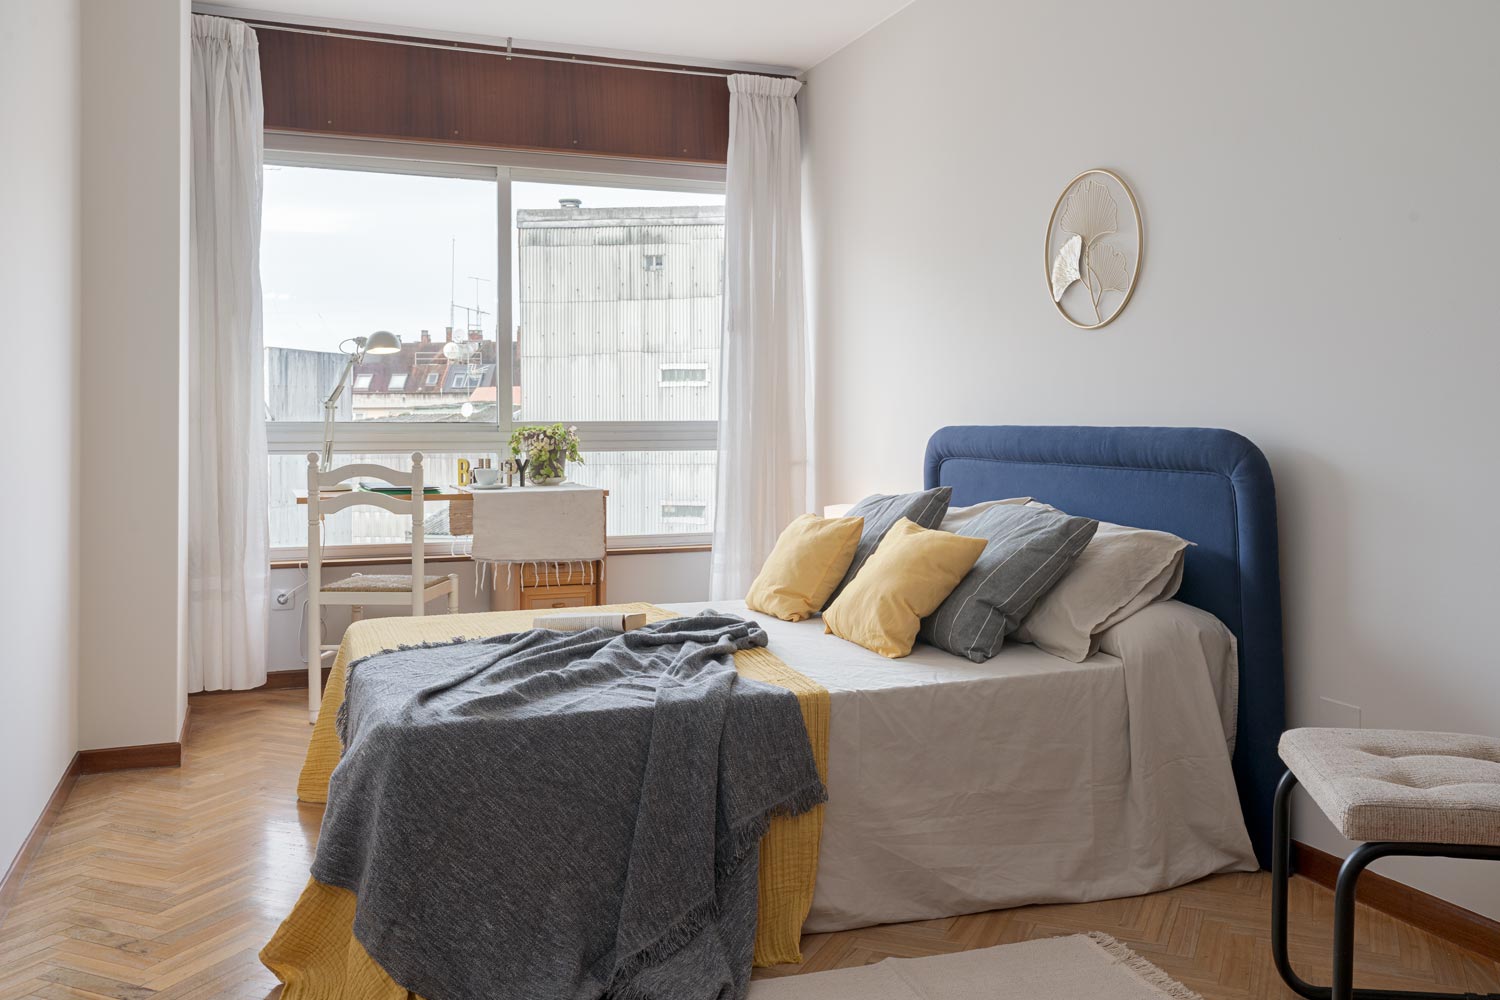 Dormitorio principal en un piso en Sada, A Coruña, decorado con técnicas de home staging, destacando una cama con cabecero azul y cojines amarillos y grises